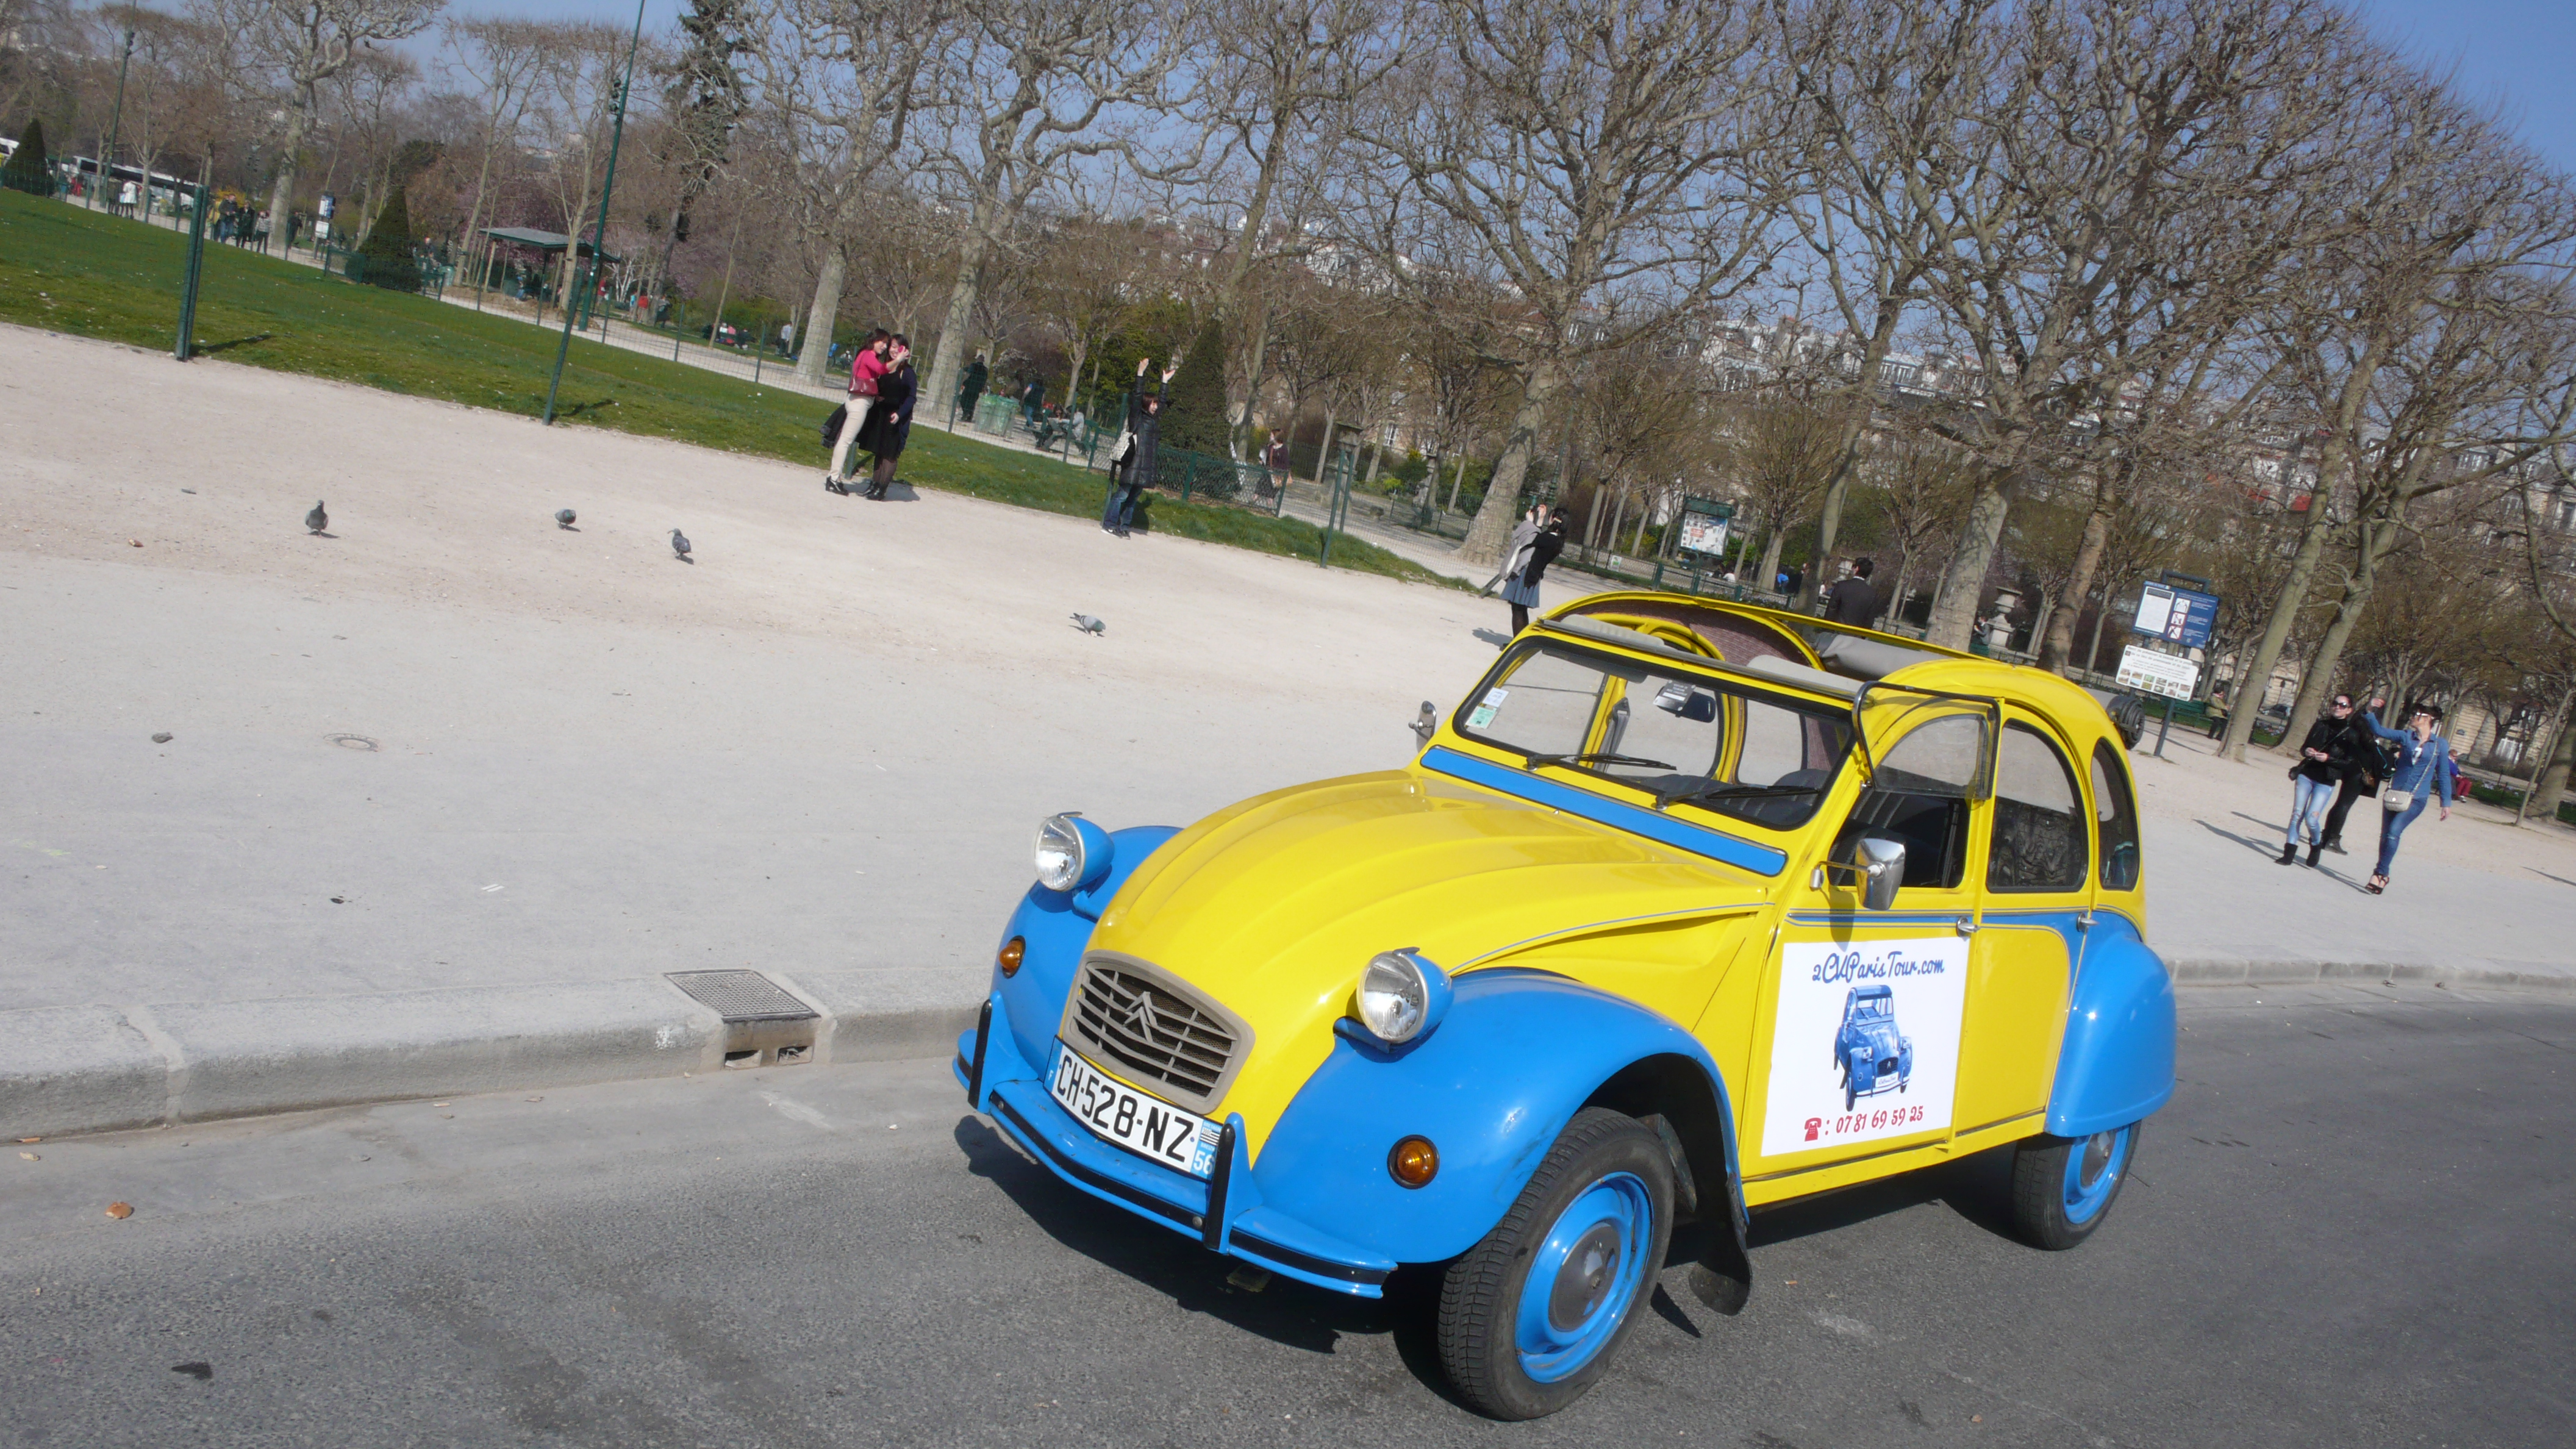 2CV Paris Tour ; Sightseeing tours by 2CV! The 2CV near The Eiffel Tower